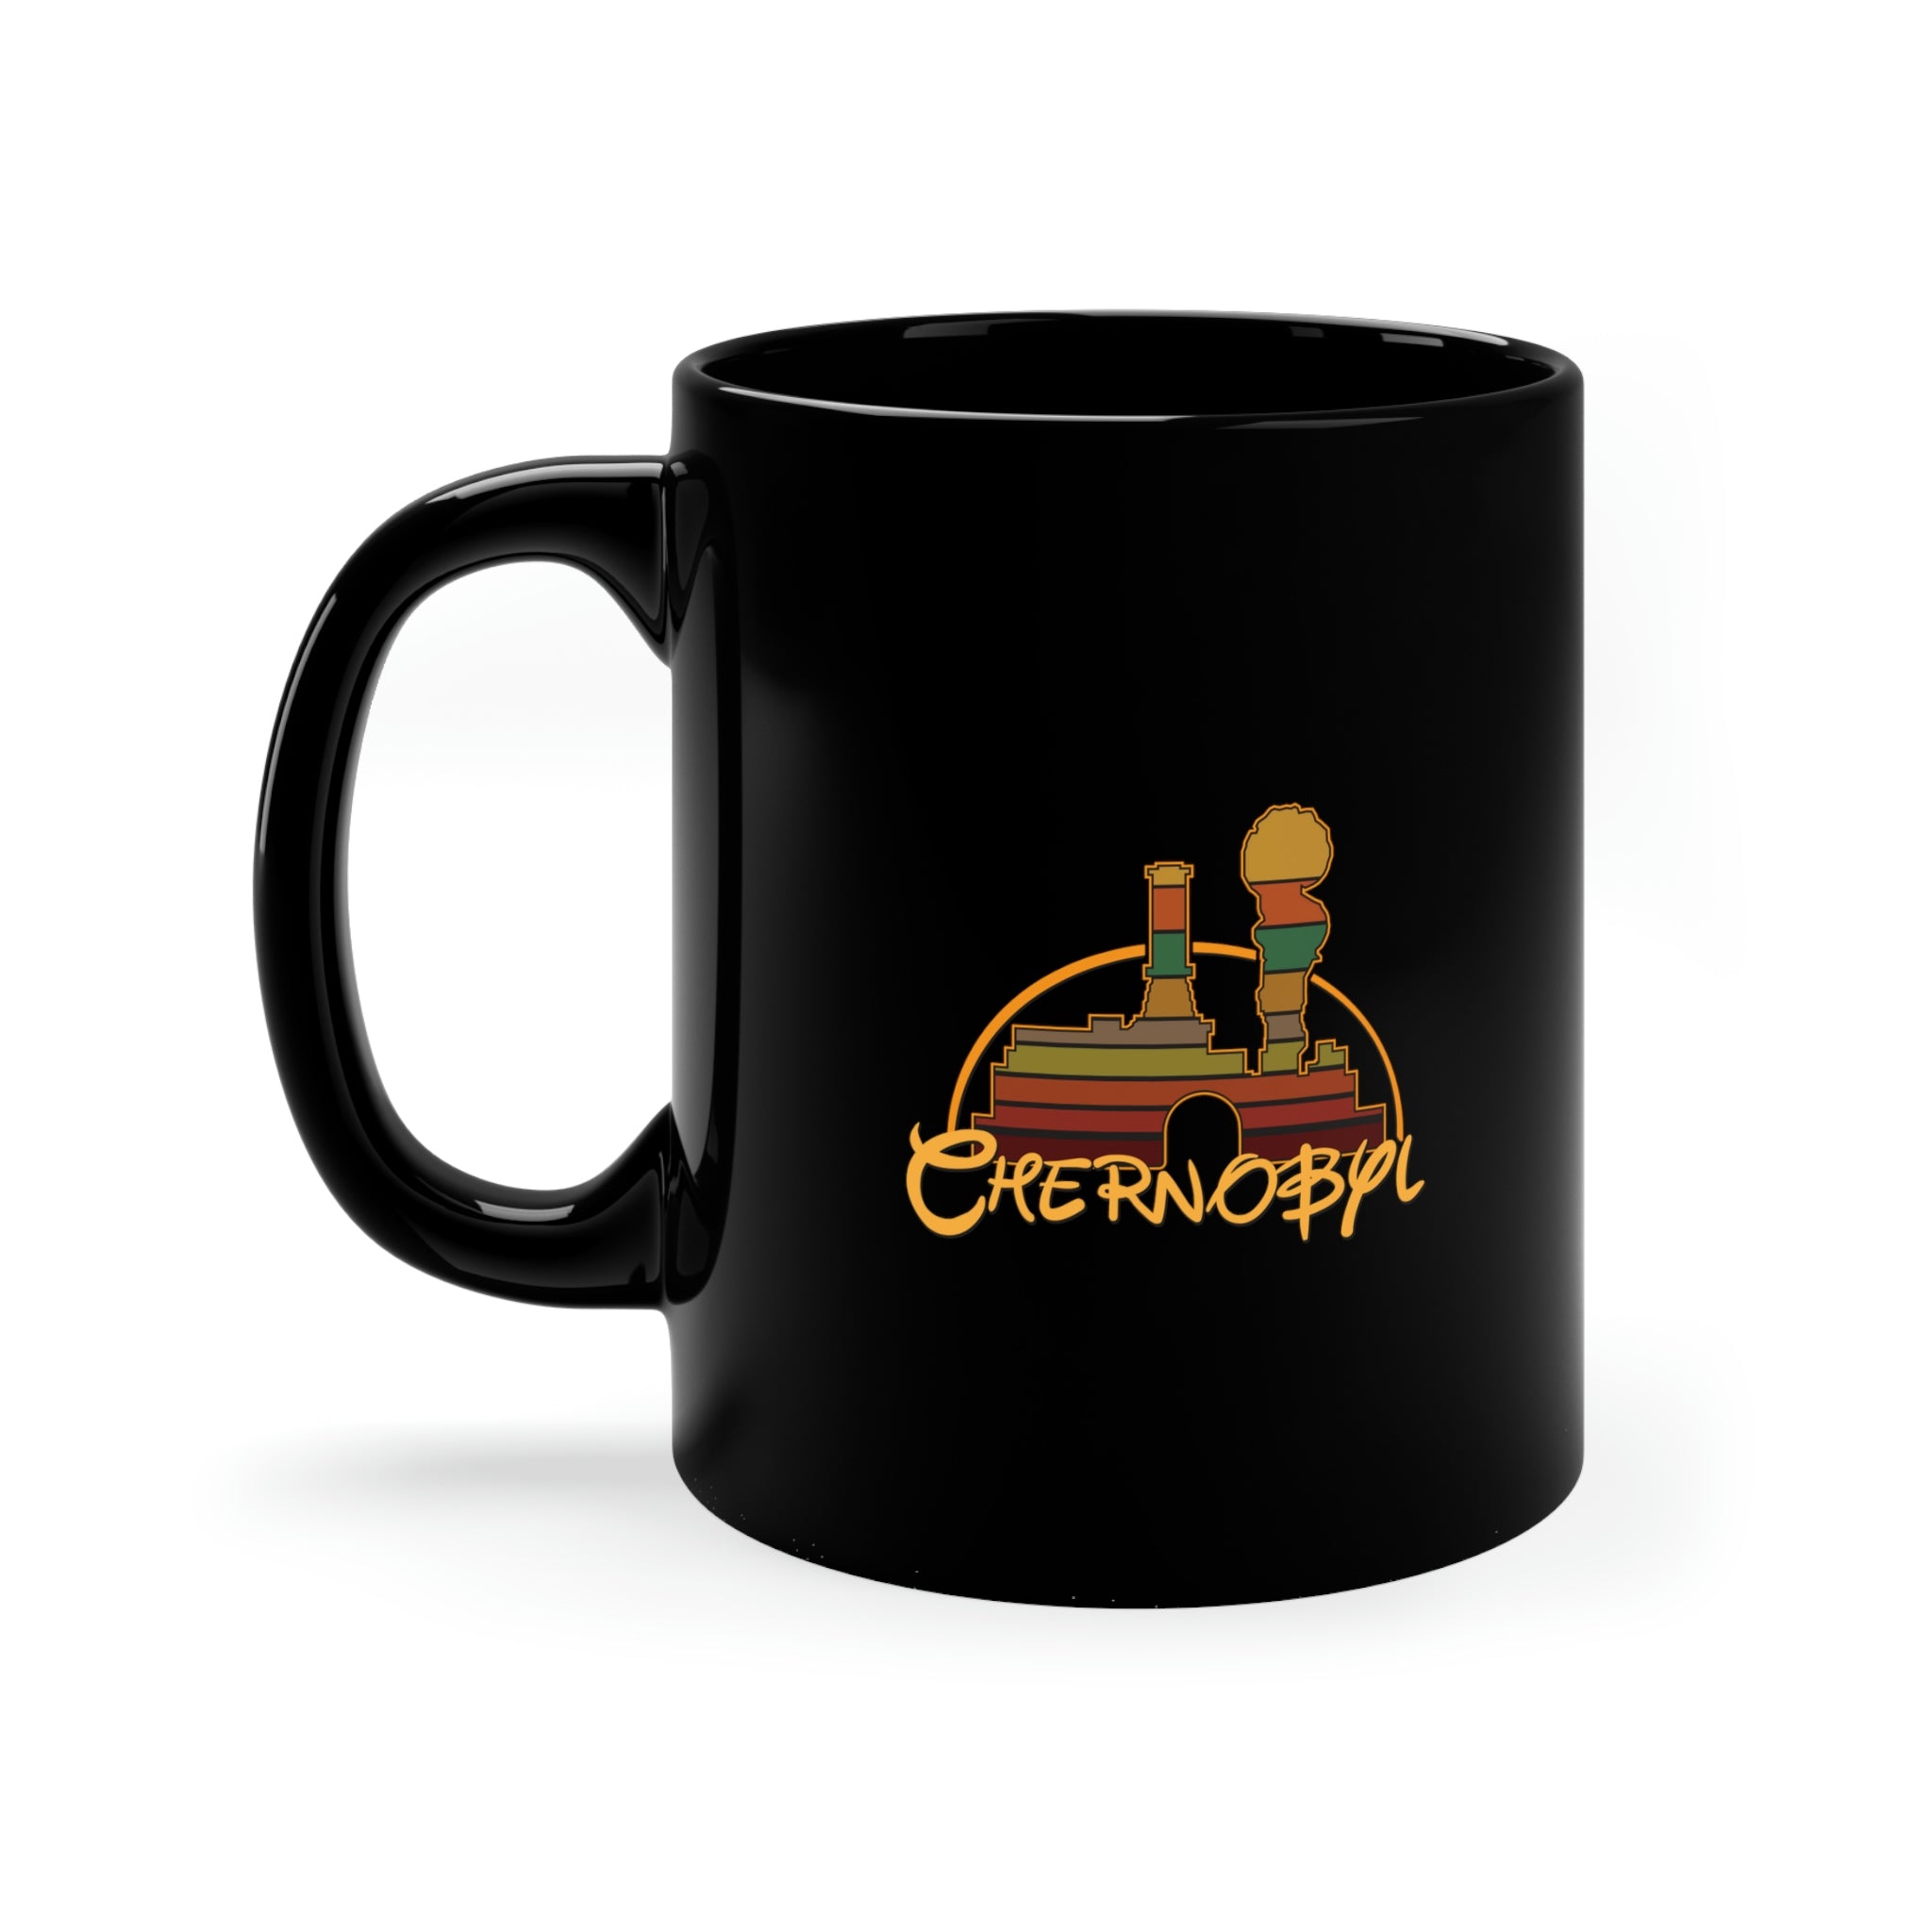 Chernobyl Generation -  Black Mug